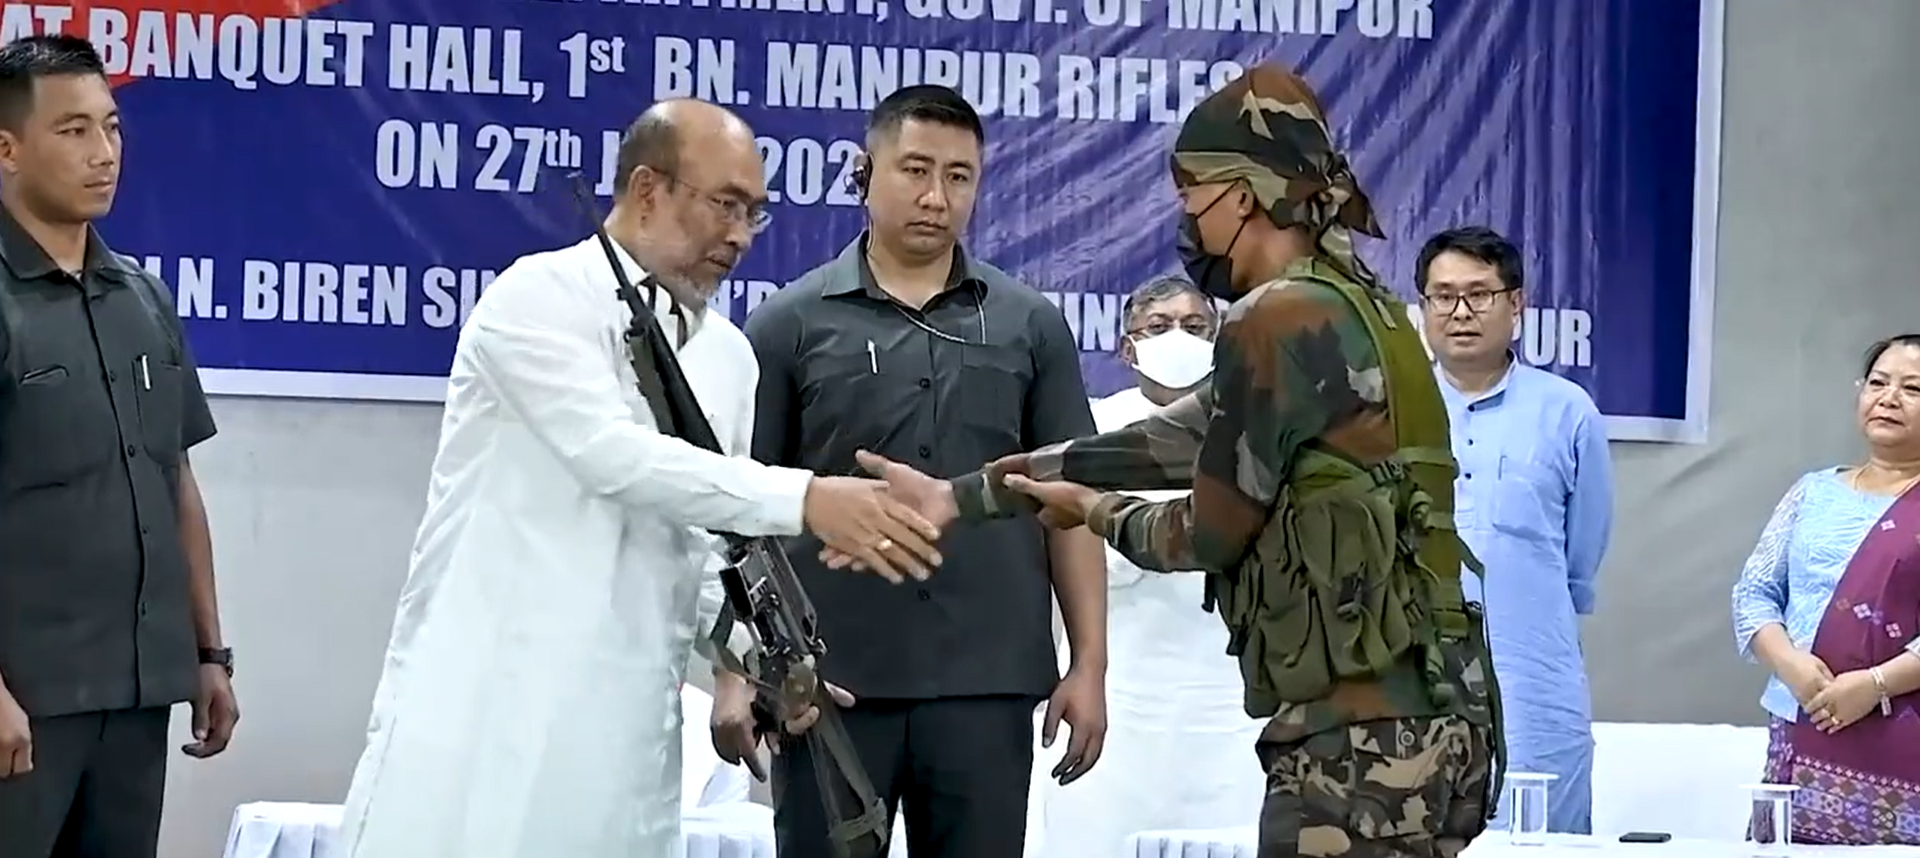 मणिपुर: उग्रवादी समूह ने मुख्यमंत्री एन बीरेन सिंह के सामने आत्मसमर्पण कर हुए मुख्यधारा में शामिल